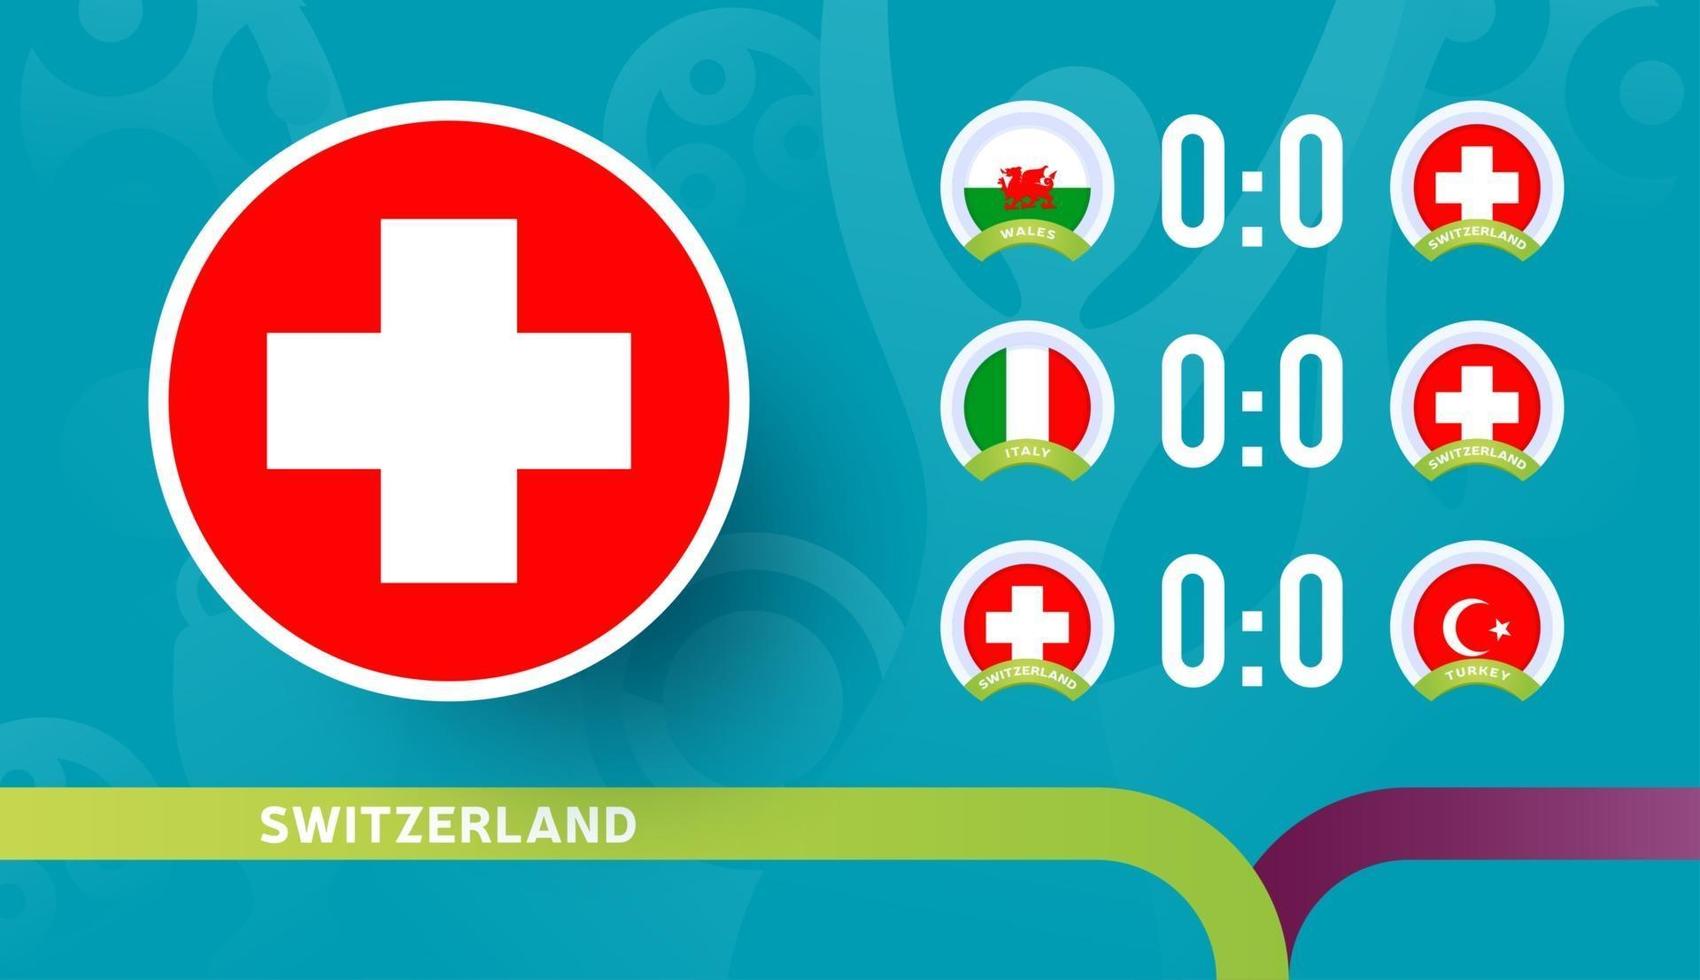 zwitserse nationale ploeg schema wedstrijden in de laatste fase van het voetbalkampioenschap 2020. vectorillustratie van voetbal 2020-wedstrijden. vector